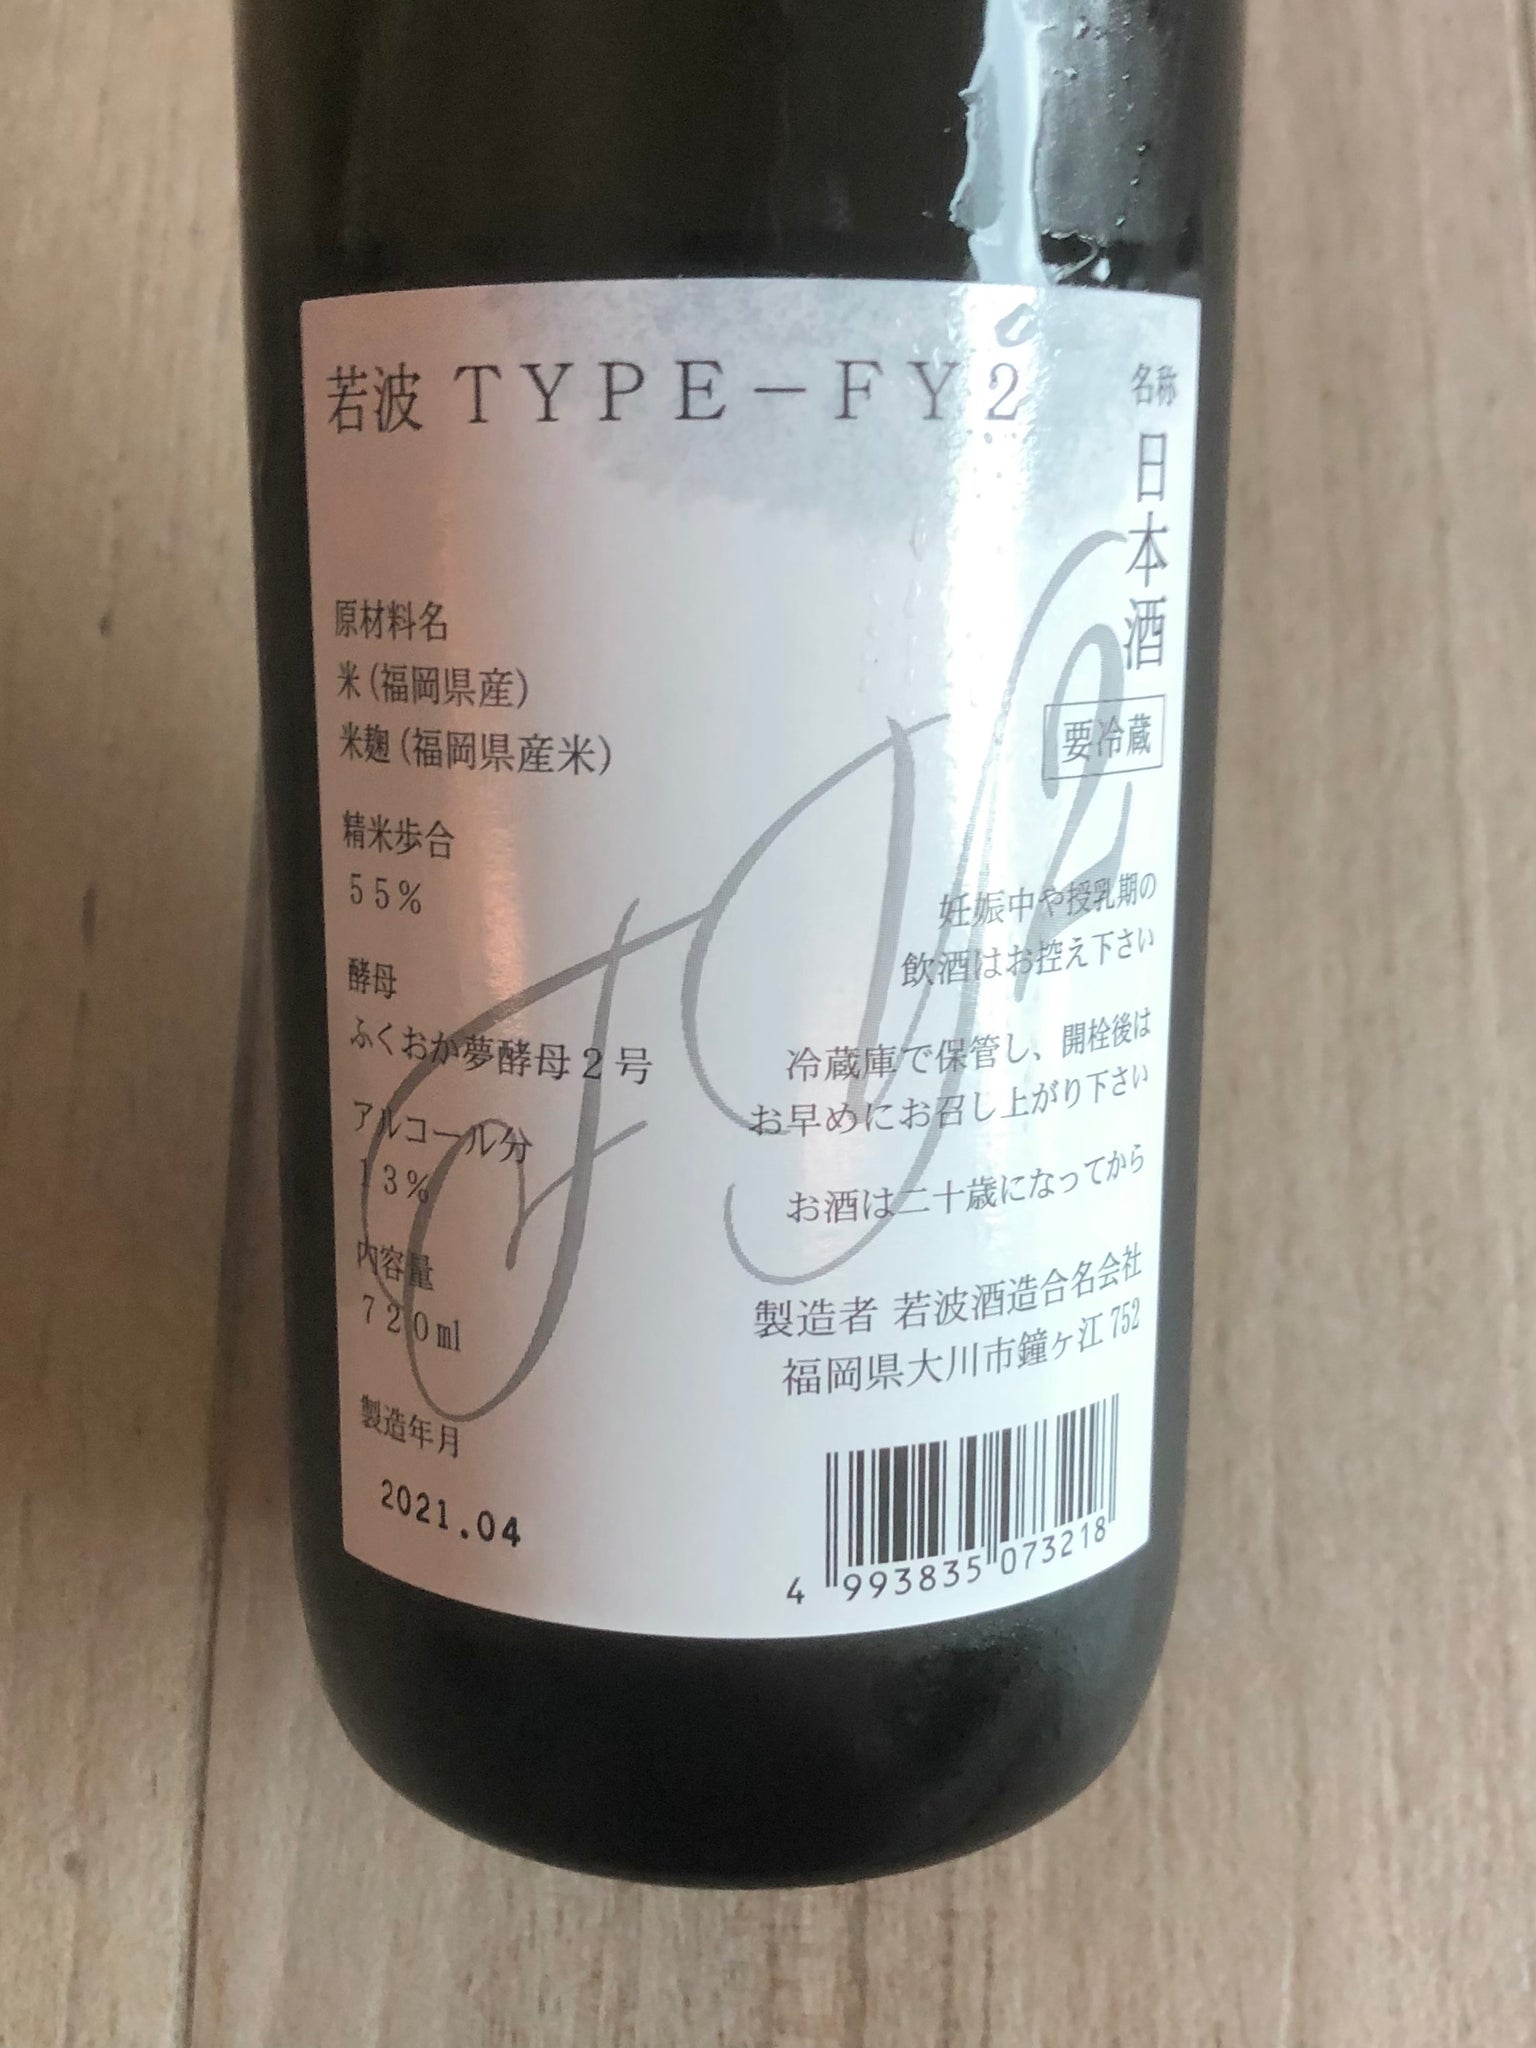 【若波】 TYPE -FY2 純米吟釀 日本清酒 720ml